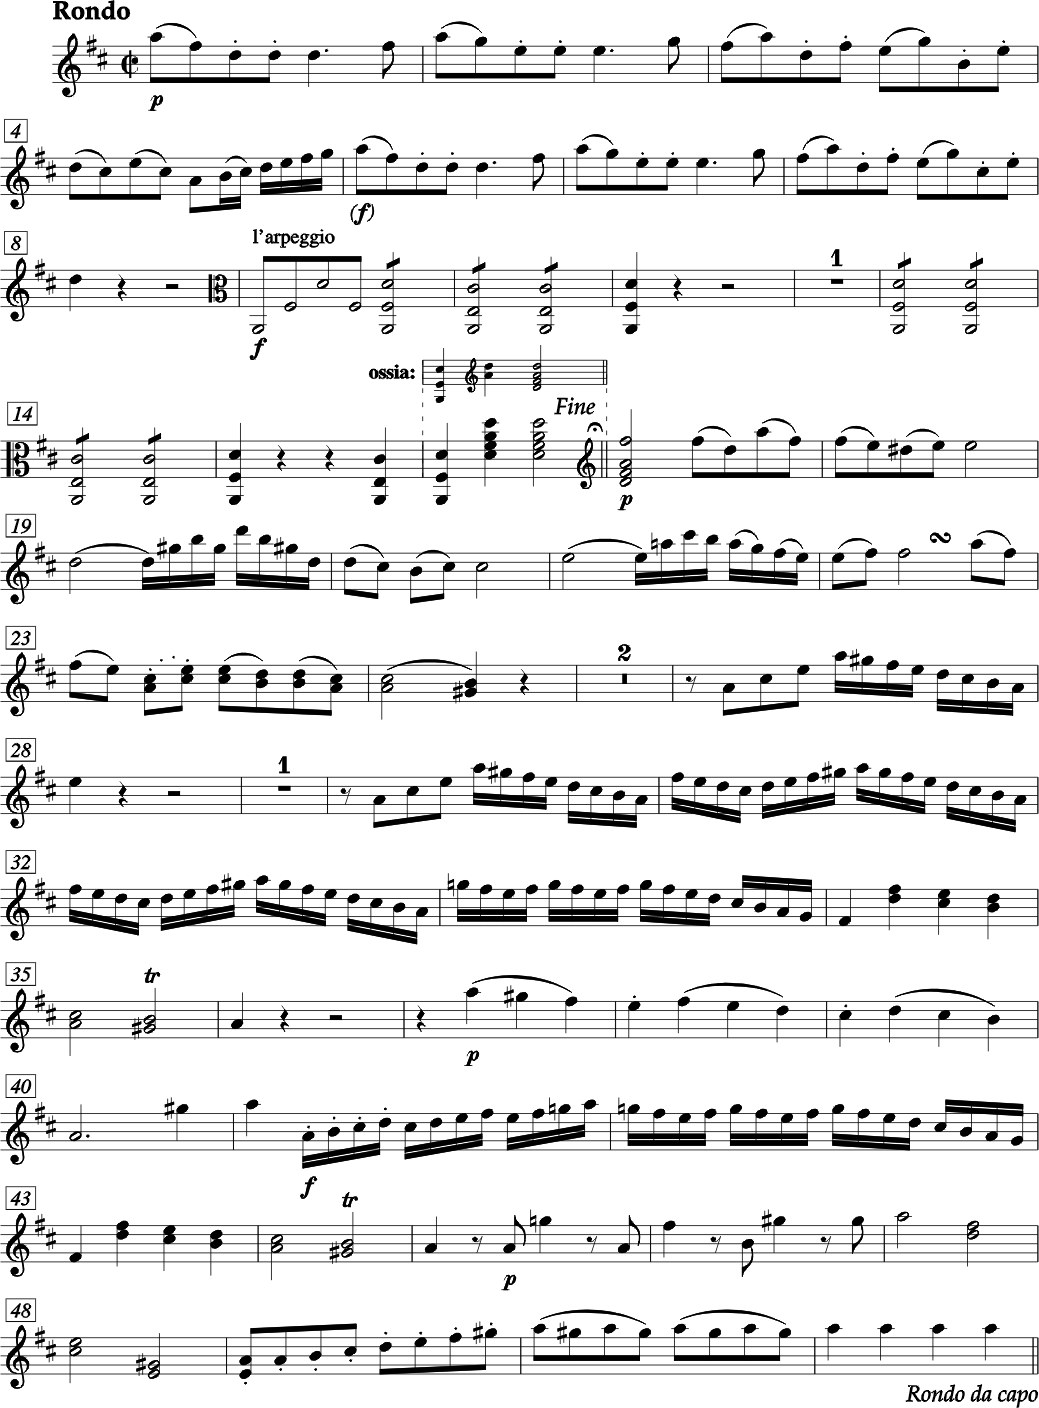 FRANZ ANTON HOFFMEISTER QUARTETTO IV Mi bemolle maggiore (Re maggiore) per Viola d'amore, due Violini, Violoncello e due Corni ad libitum